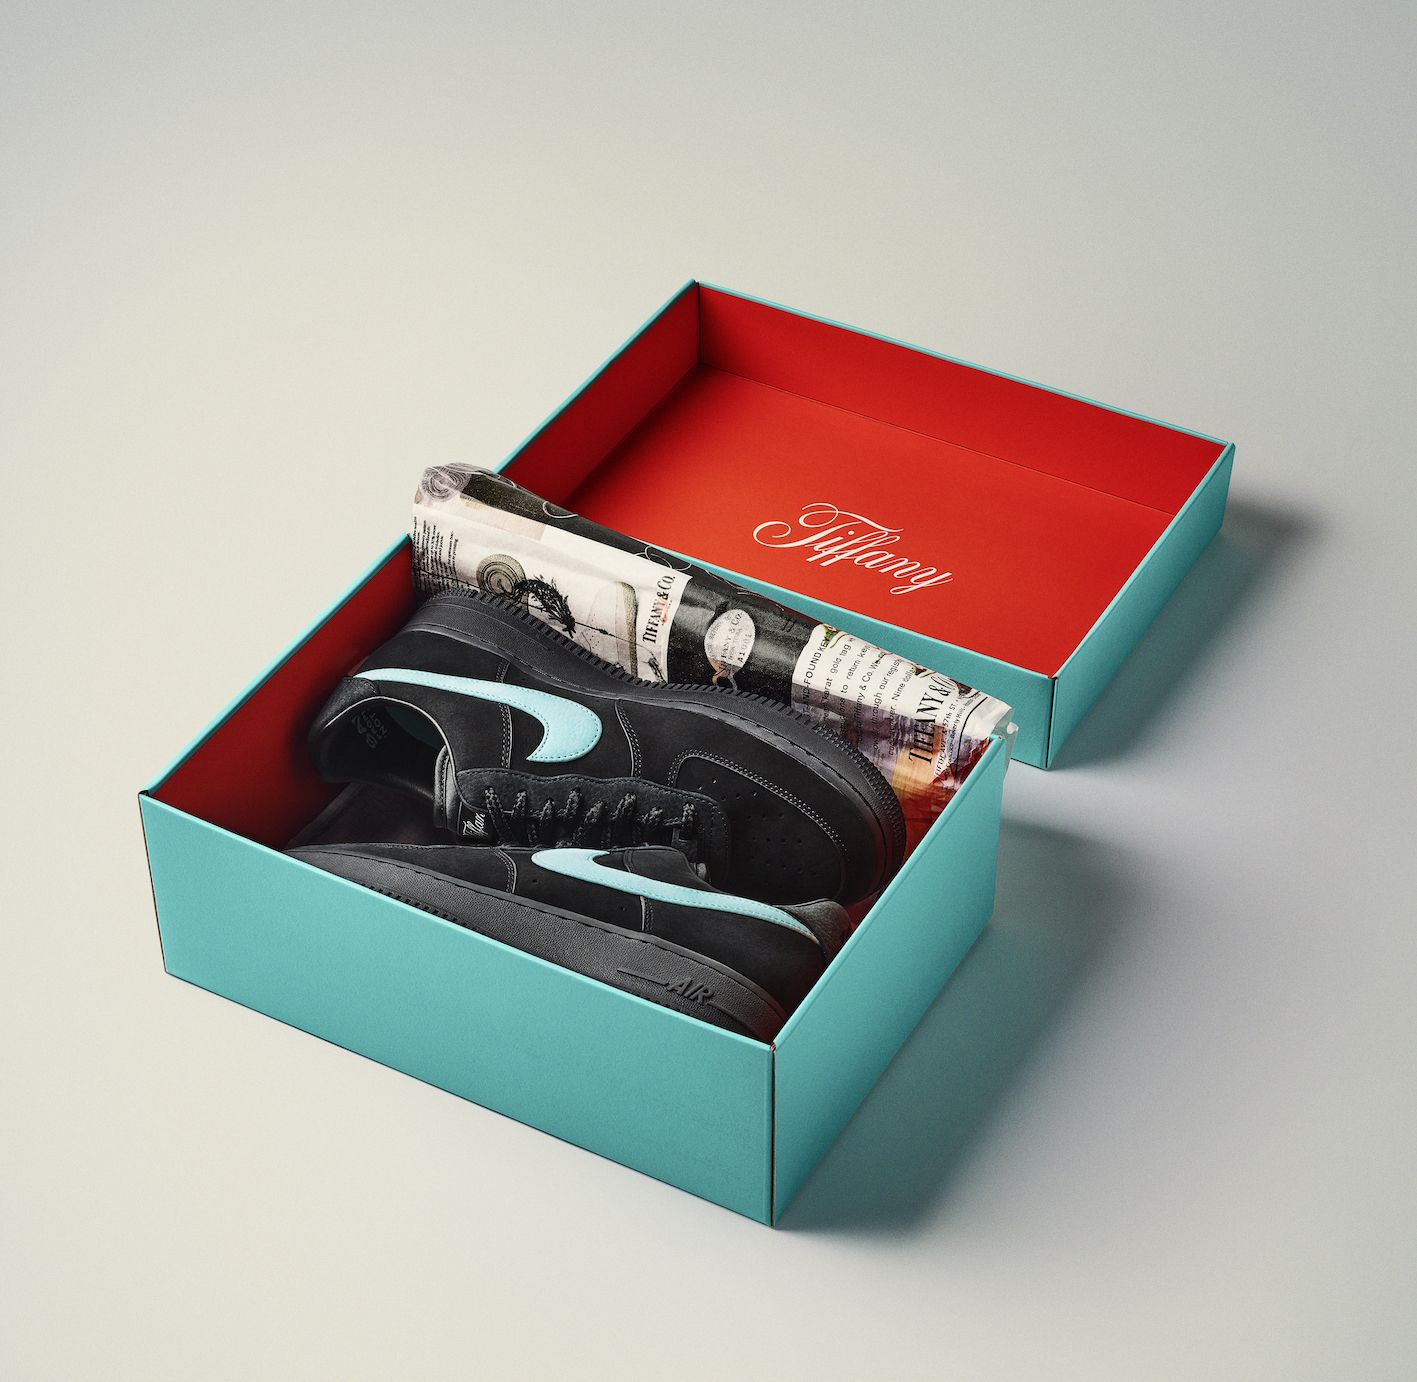 especificación En necesidad de microscópico Tiffany & Co. abre su caja vira de zapatillas Nike Air Force 1